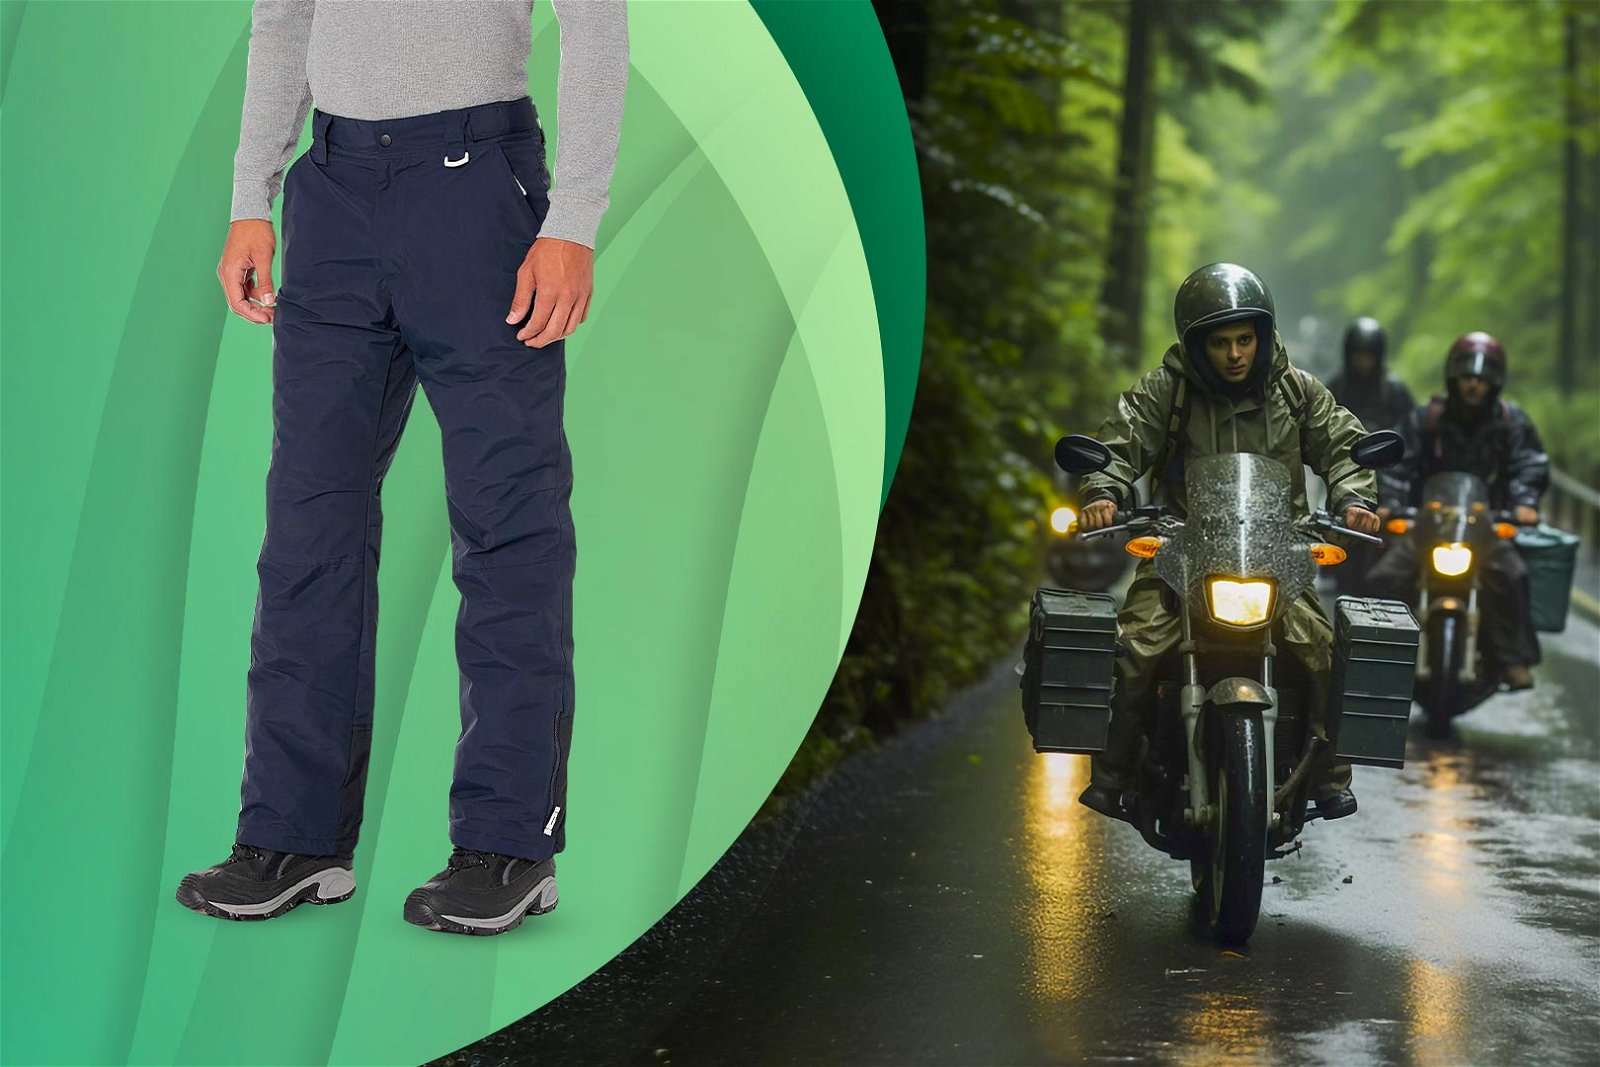 Pantaloni impermeabili in primo piano e foto di ragazzo in moto mentre piove